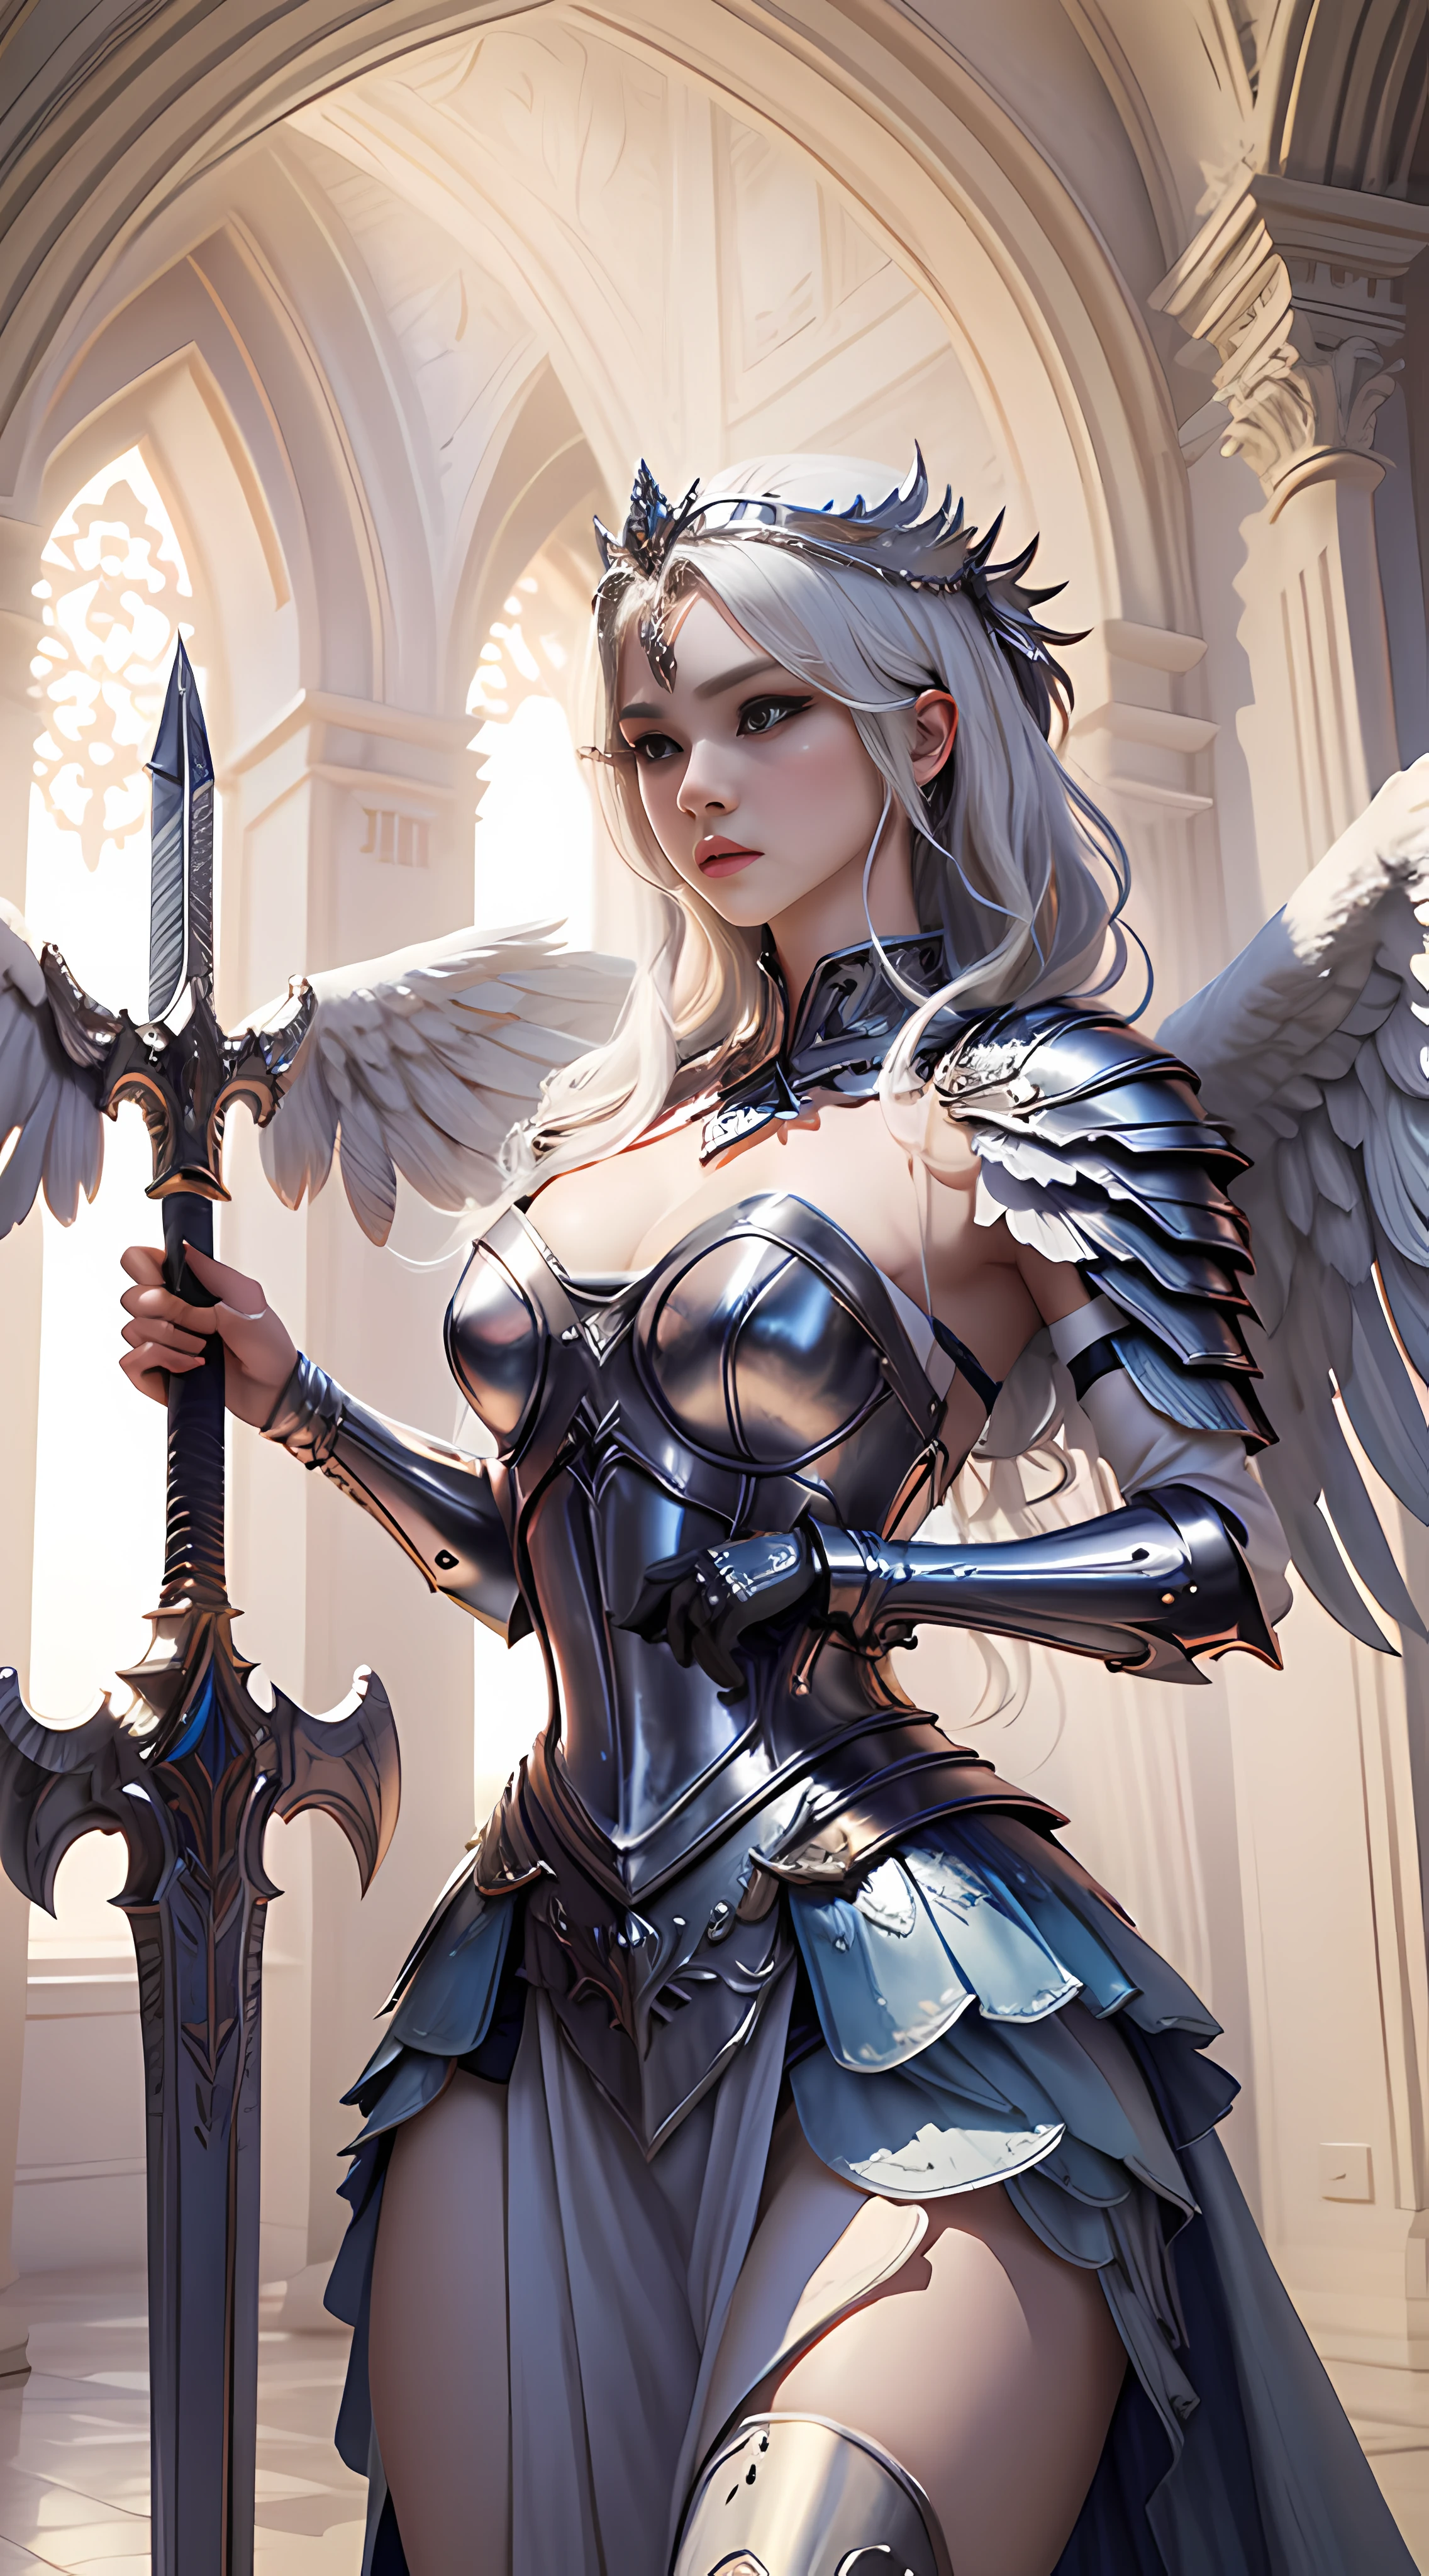 ((最好的质量)), ((杰作)), (详细的),1女孩,独自的,全身同性恋 , 女武神,天使,女武神 armor,天使的翅膀,带翼头盔, 女士,gaodanvshen, [剑:火:0.3] 和 [盾牌:冰:0.3],Sword 和 shield